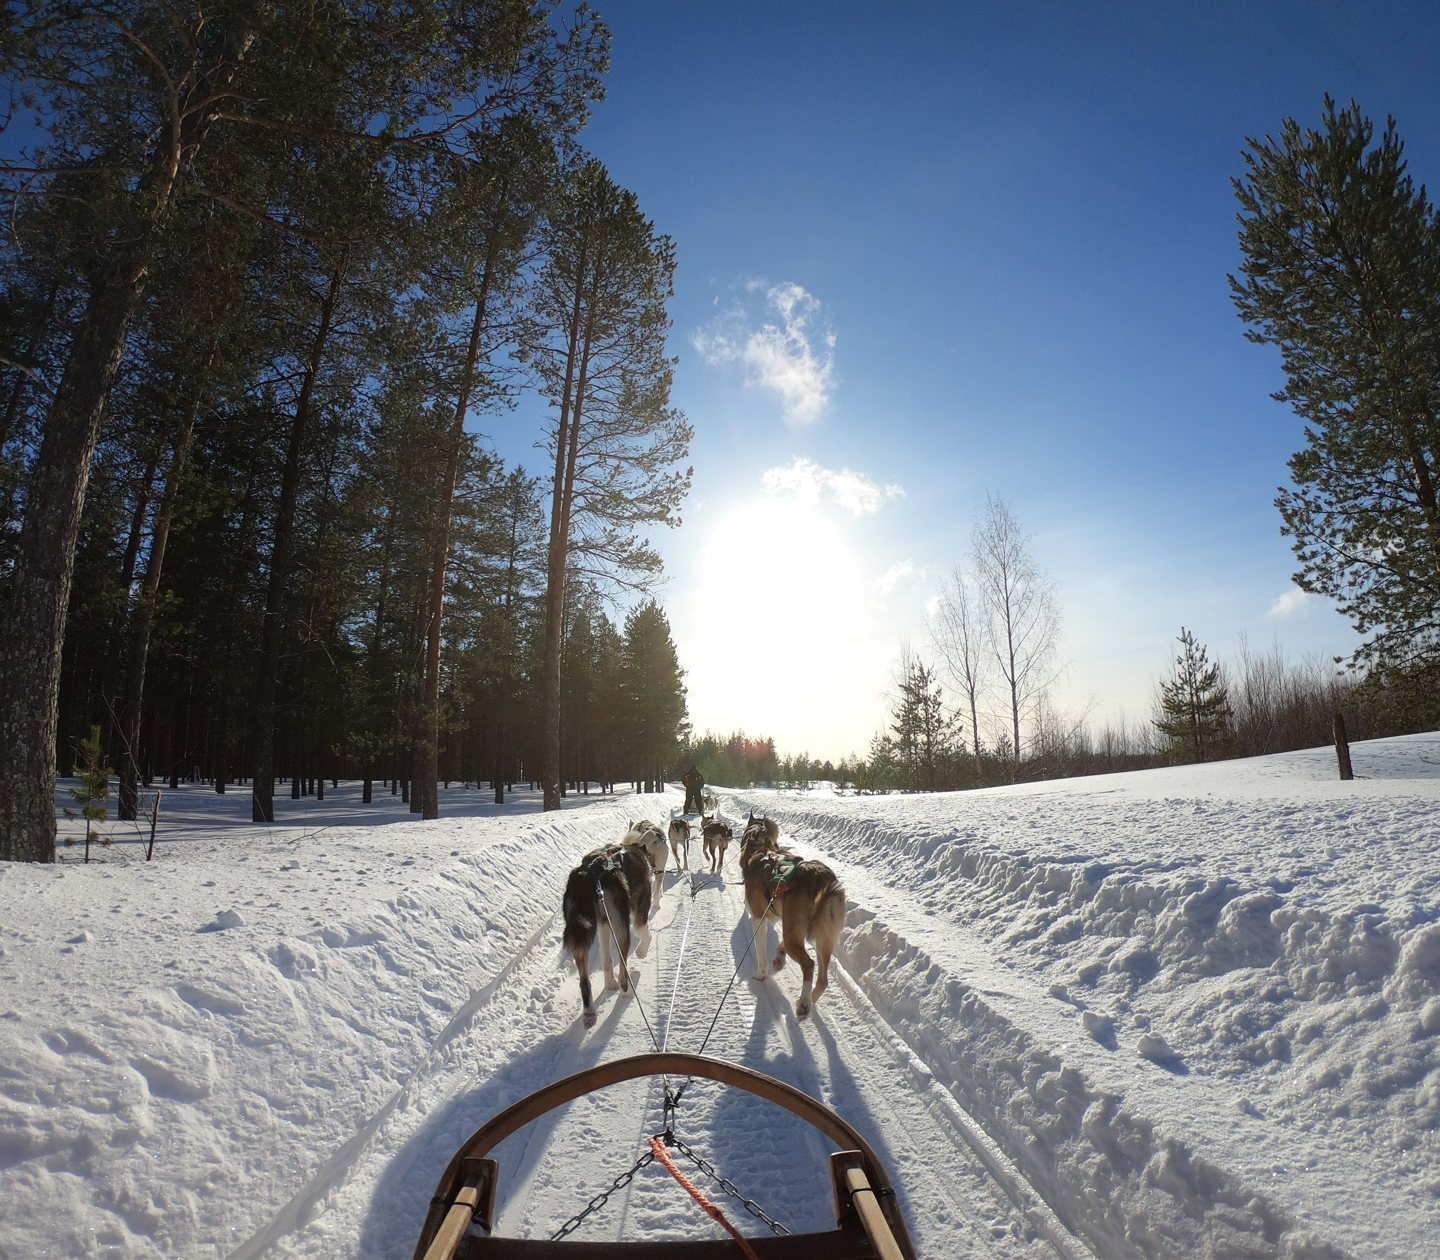 Dog sled in winter landscape